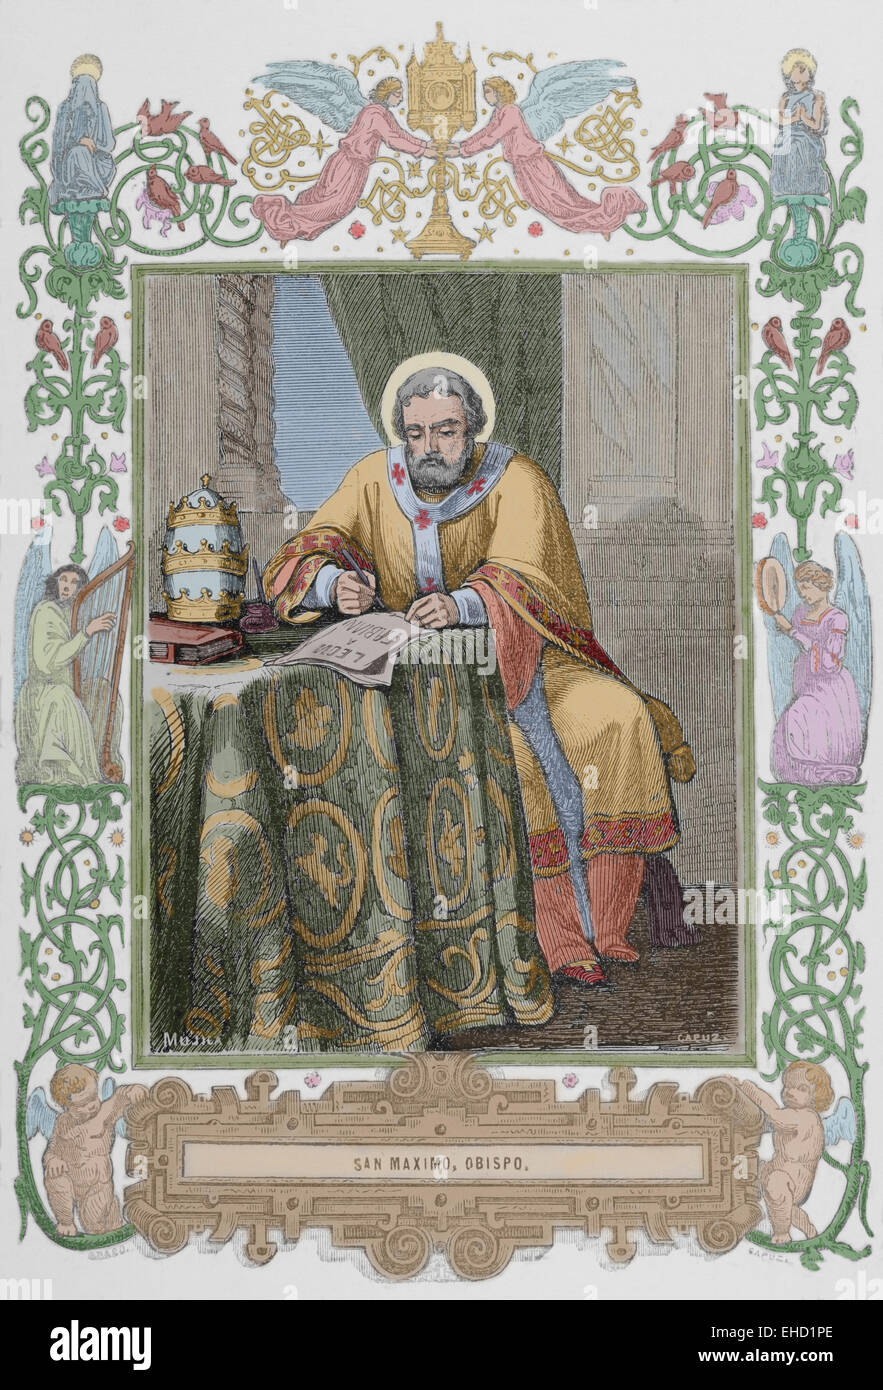 Máximo el Confesor (580-662). Monje cristiano, teólogo y erudito. Grabado por Capuz, 1853. Coloreada. Foto de stock